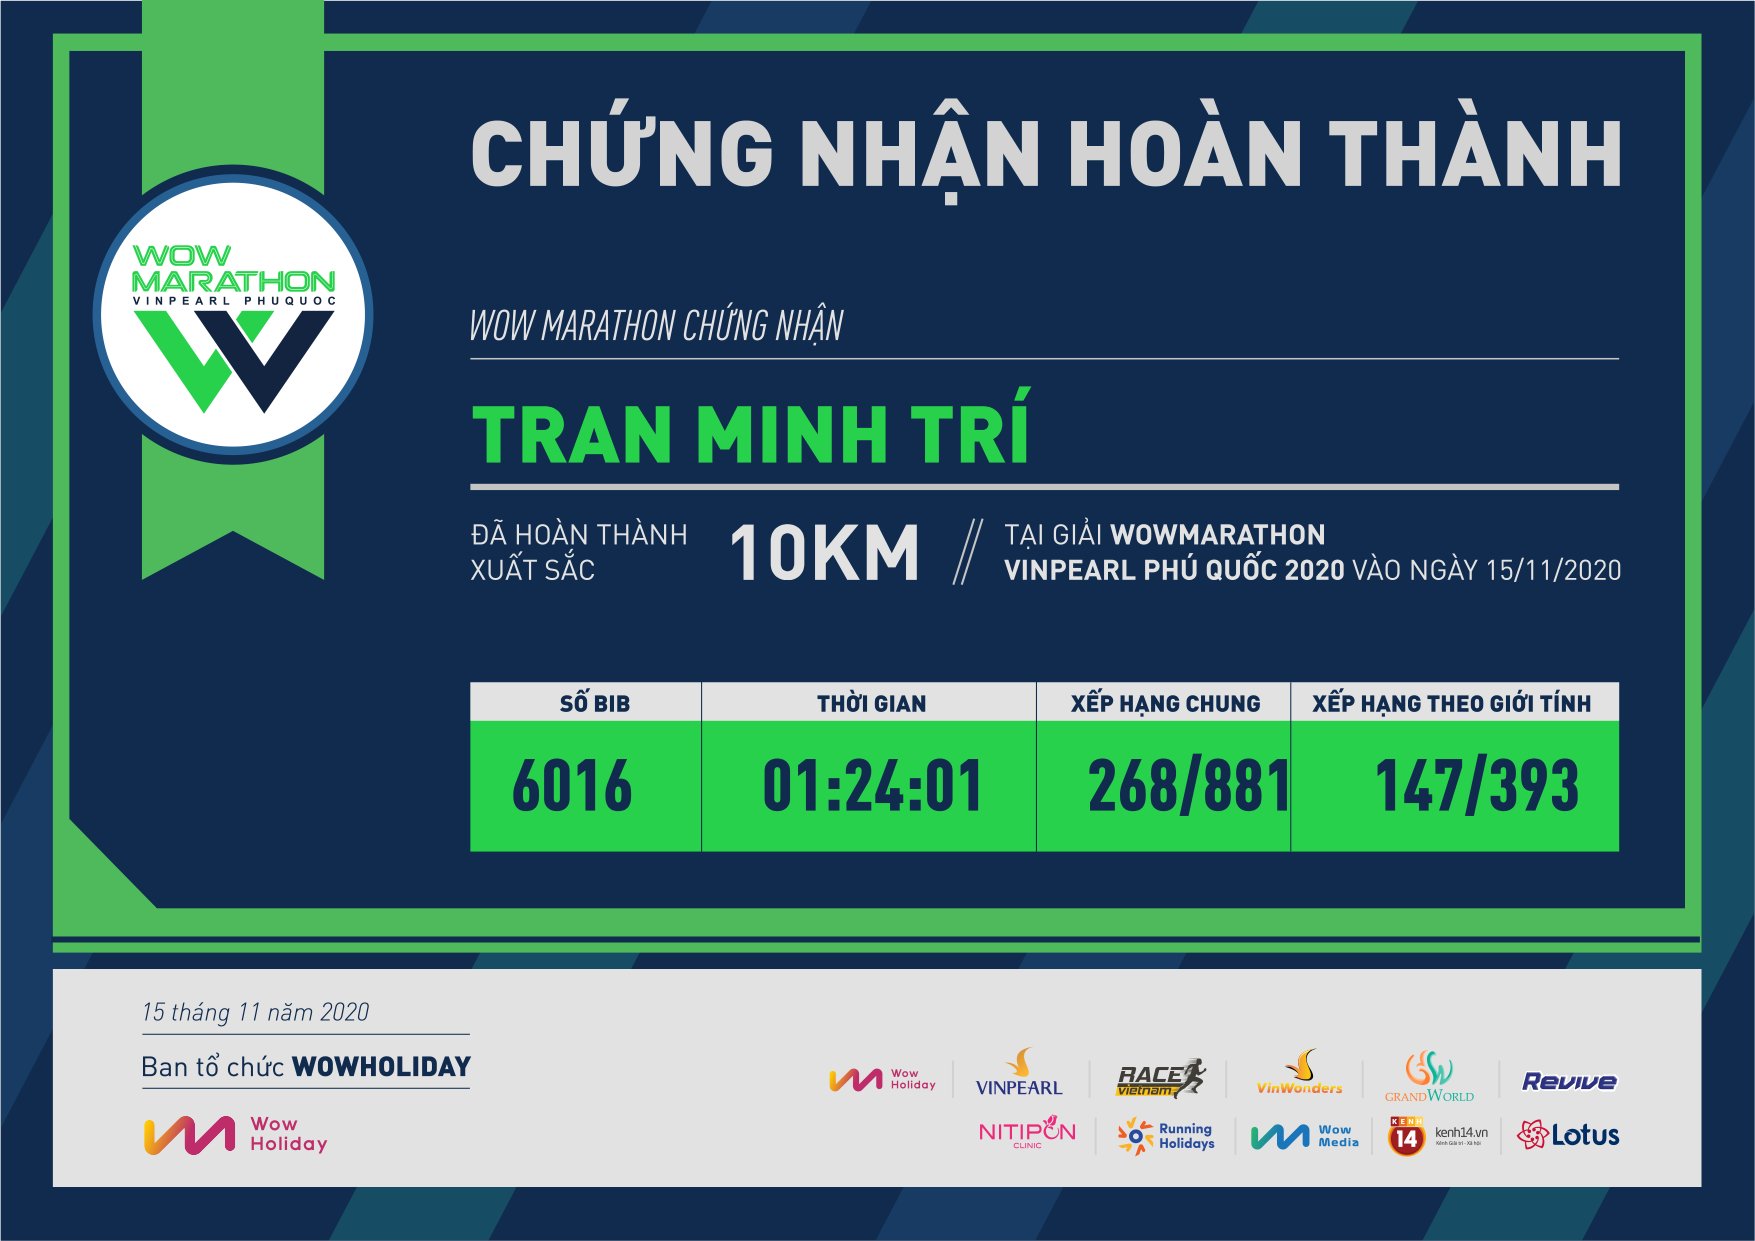 6016 - Tran Minh Trí